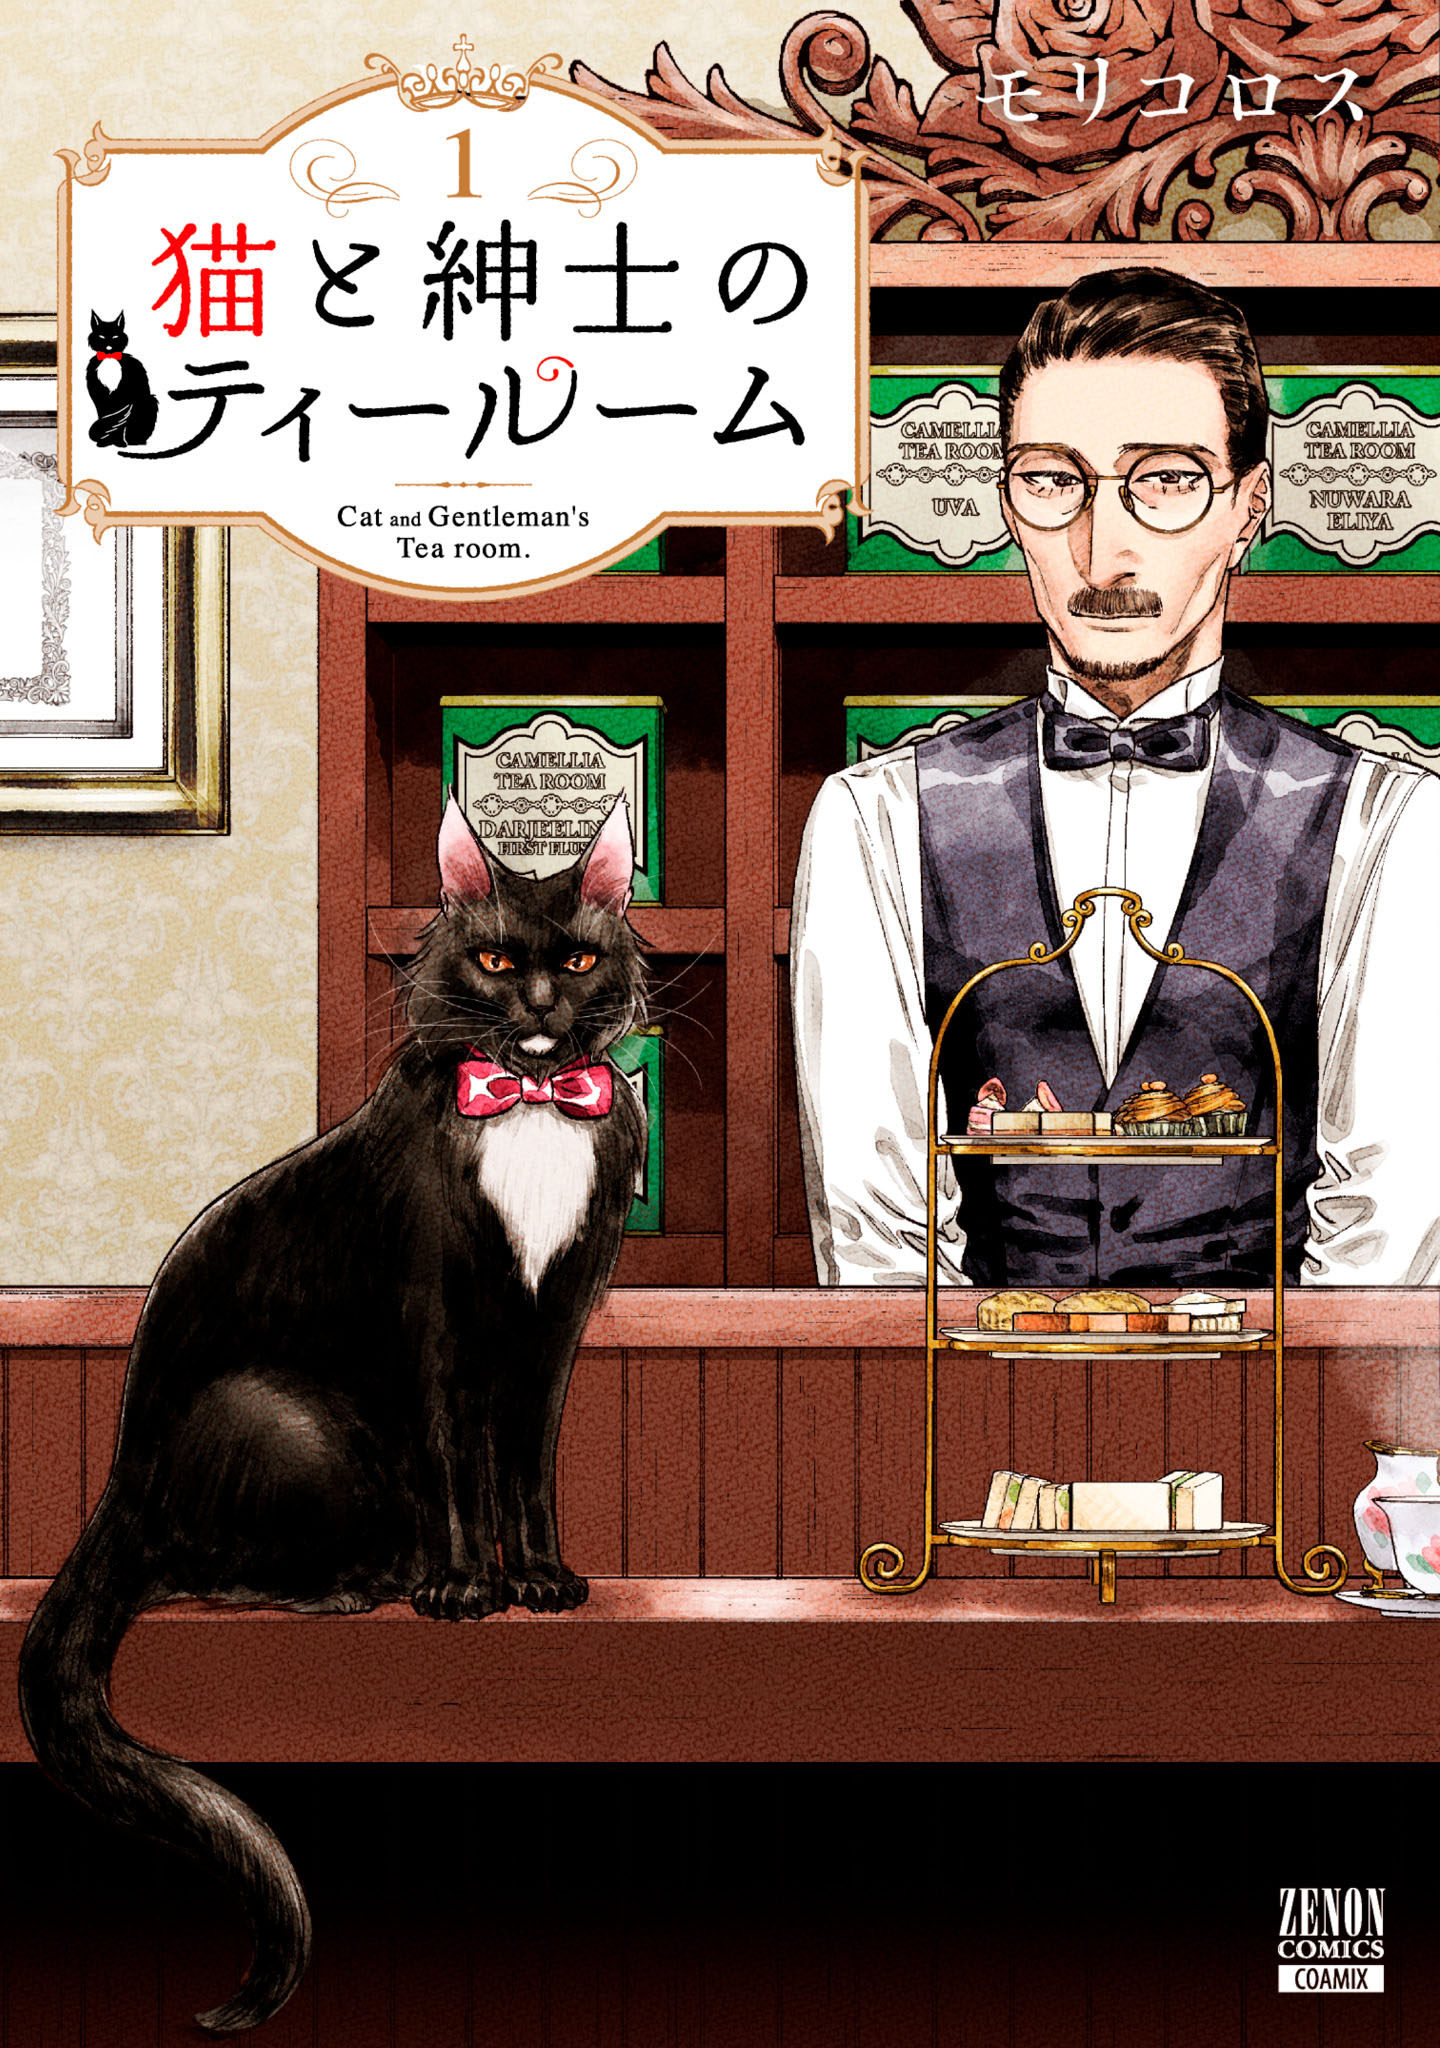 猫と紳士のティールーム 1巻特典イラスト付き   モリコロス   漫画